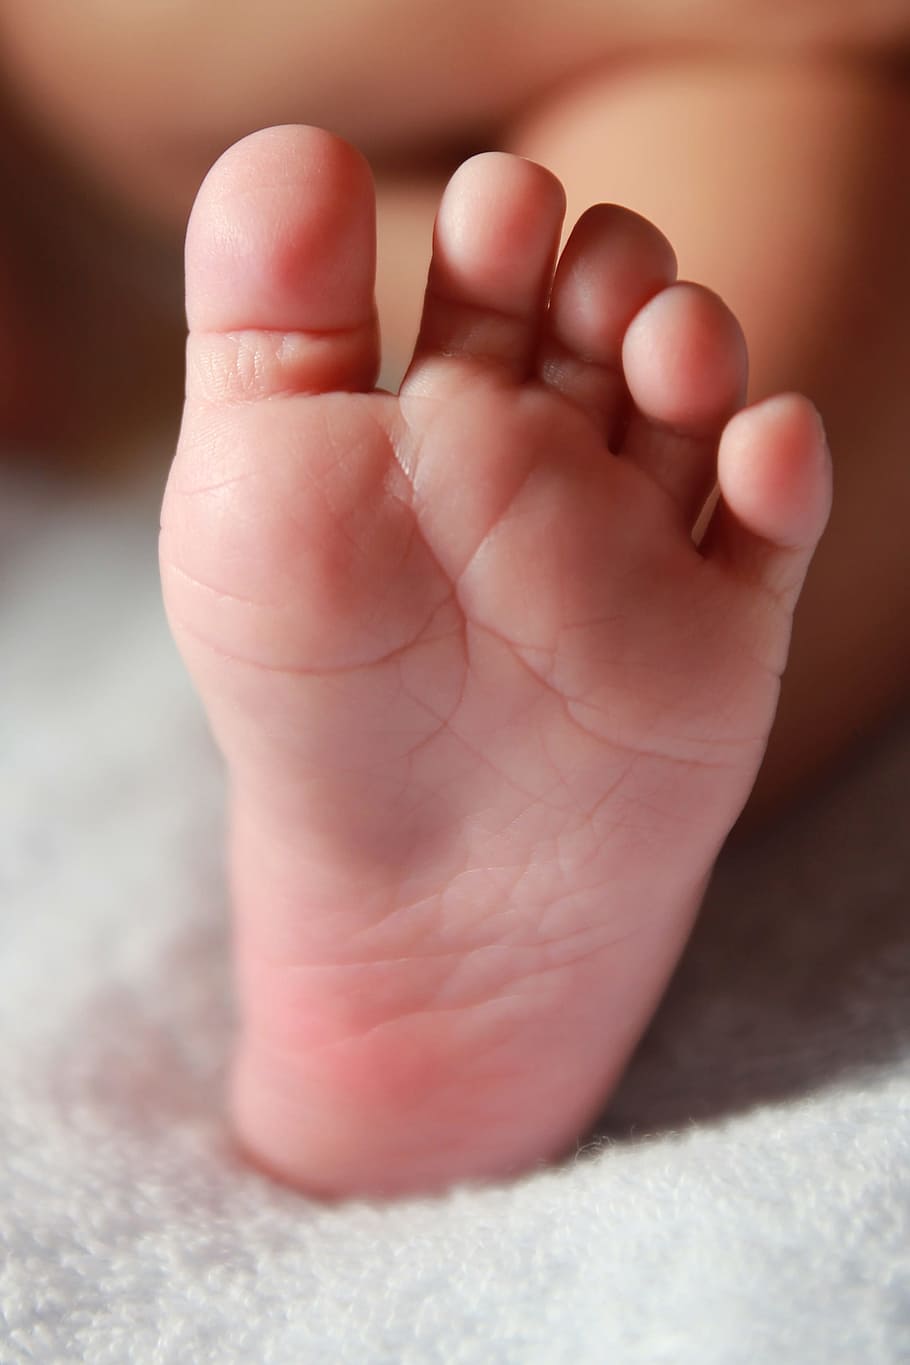 左の人の足, 新生児, 幼児, 脚, 赤ちゃんの足, 赤ちゃん, 子供, 小さい, 子供の頃, 体